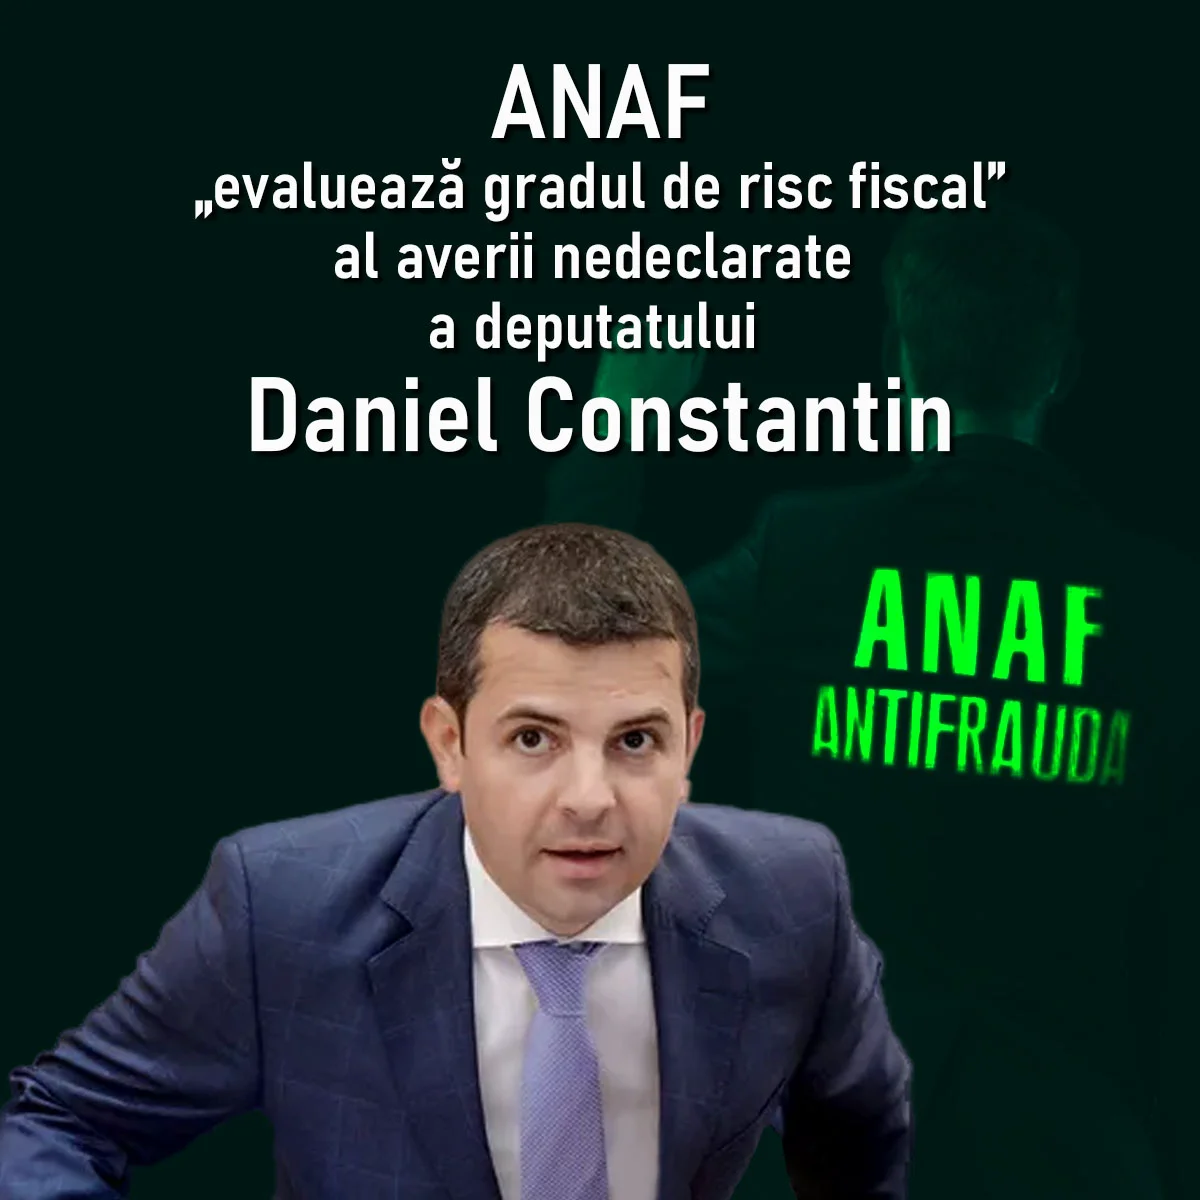 Deputatul Daniel Constantin, somat public să permită ANAF-ului să publice datele despre avere